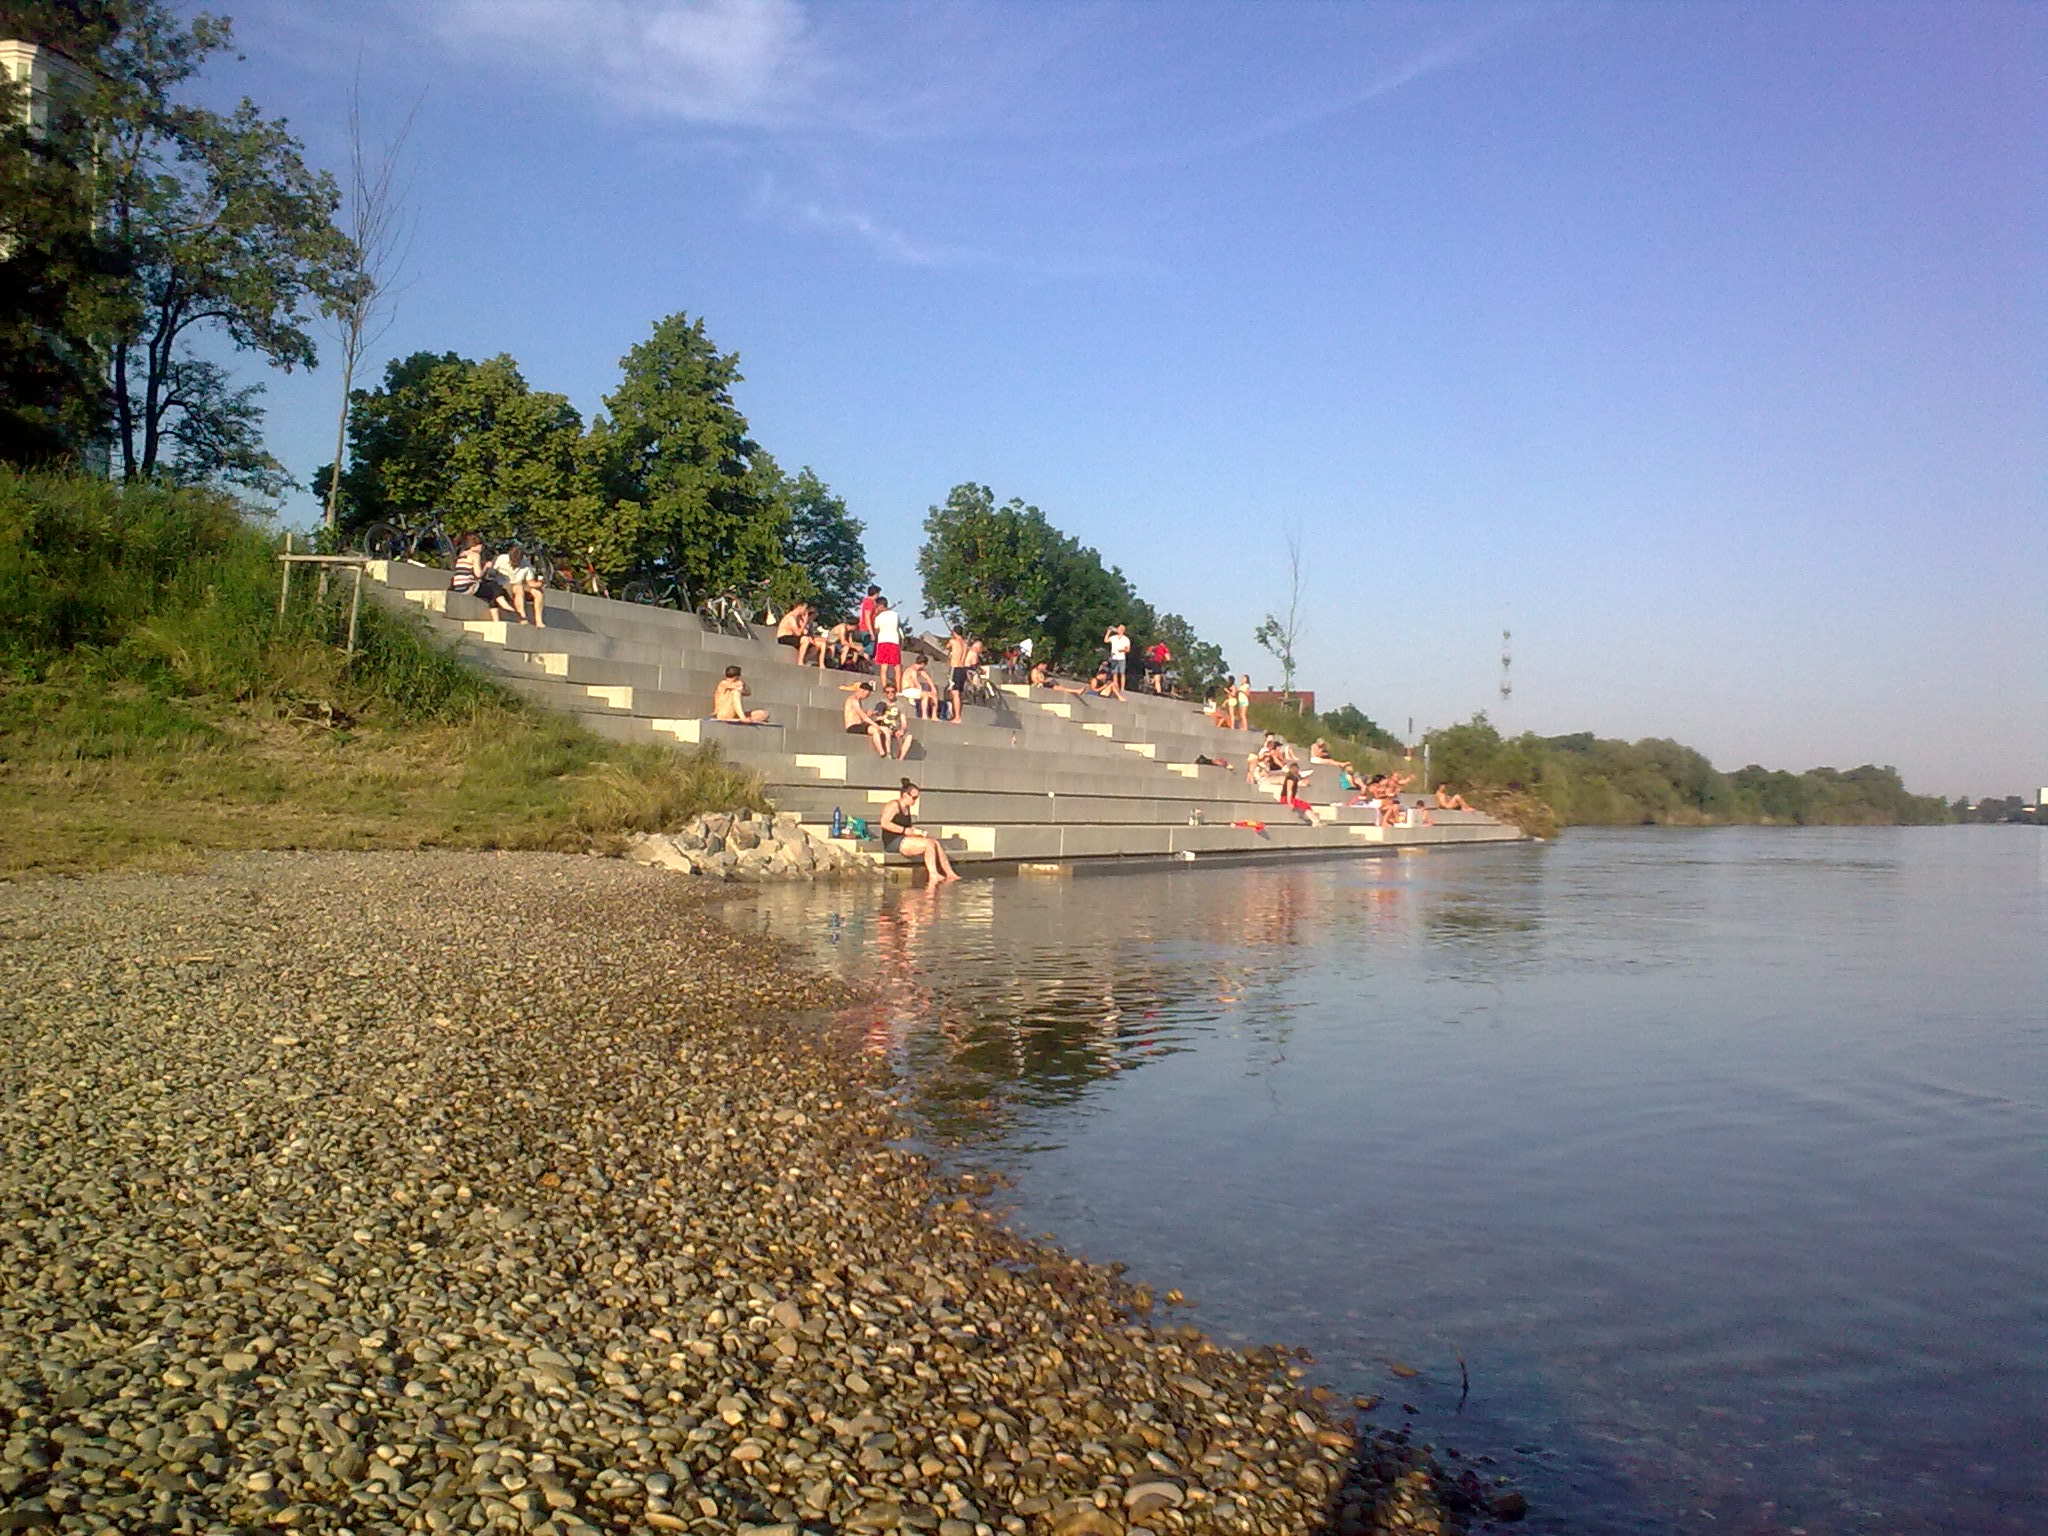 Treppenanlage mit Badegästen, im Vordergrund die Donau und links der Kiesstrand